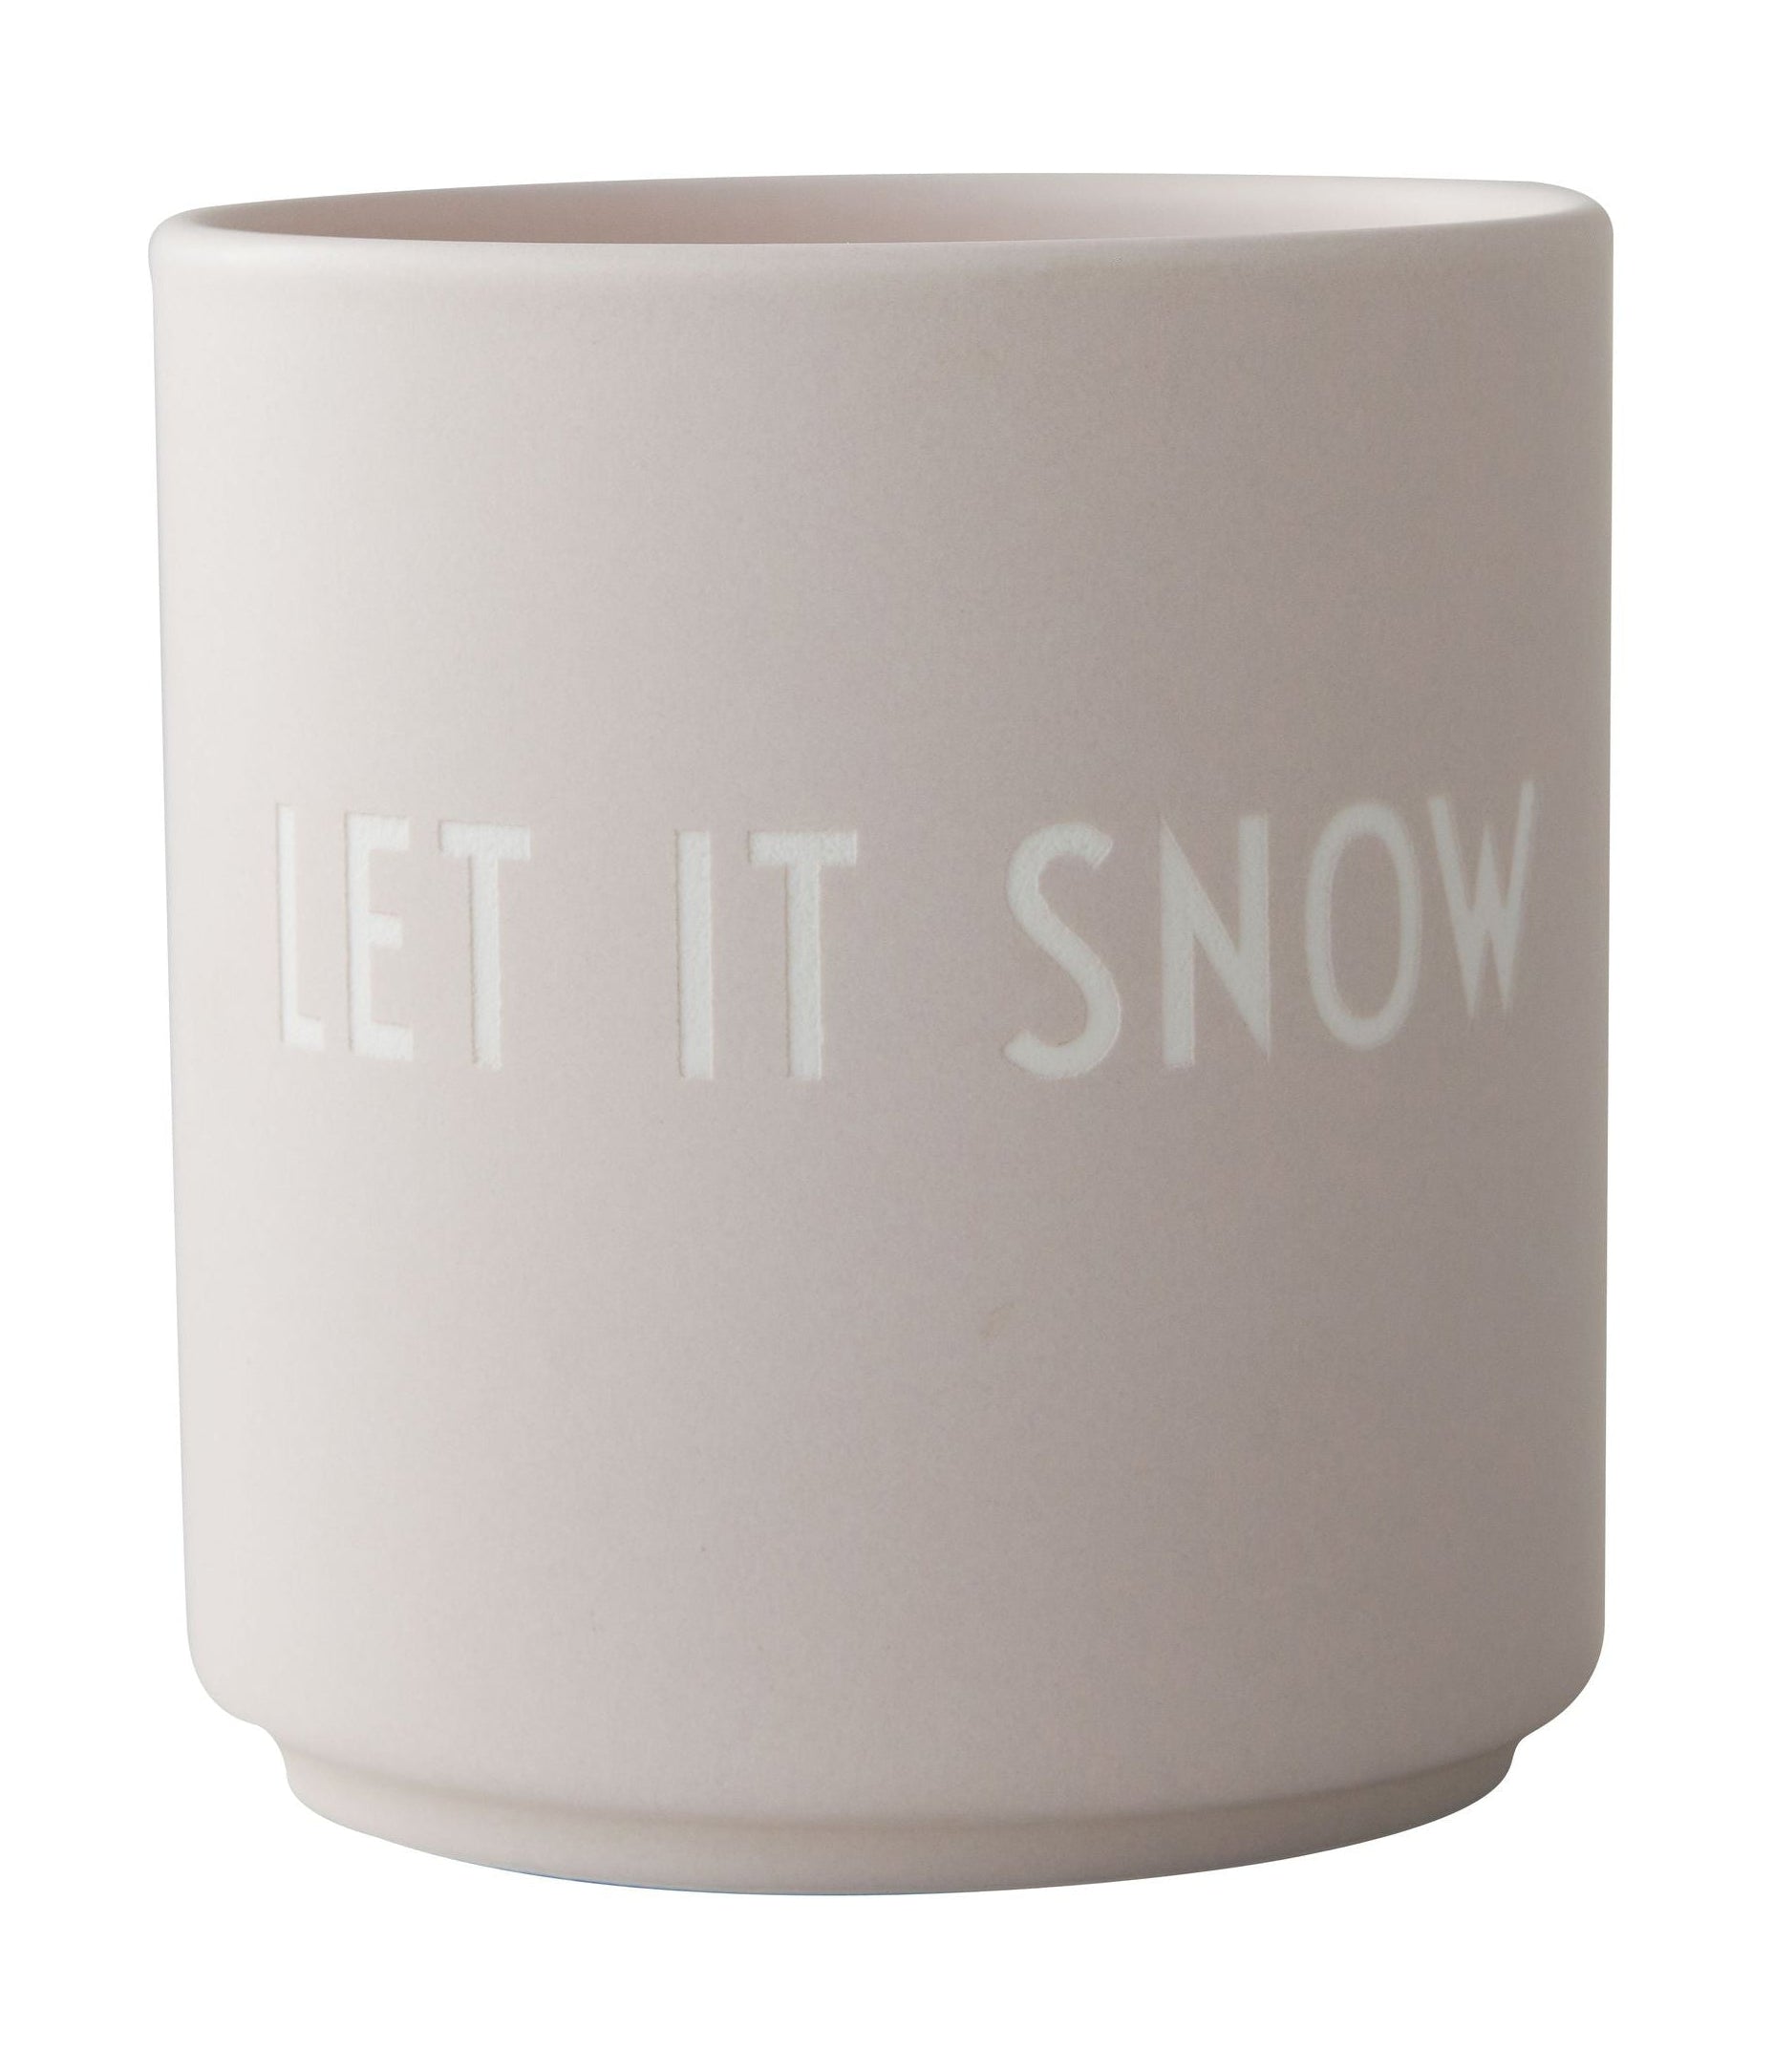 设计信的最喜欢的杯子让它下雪，粉彩米色